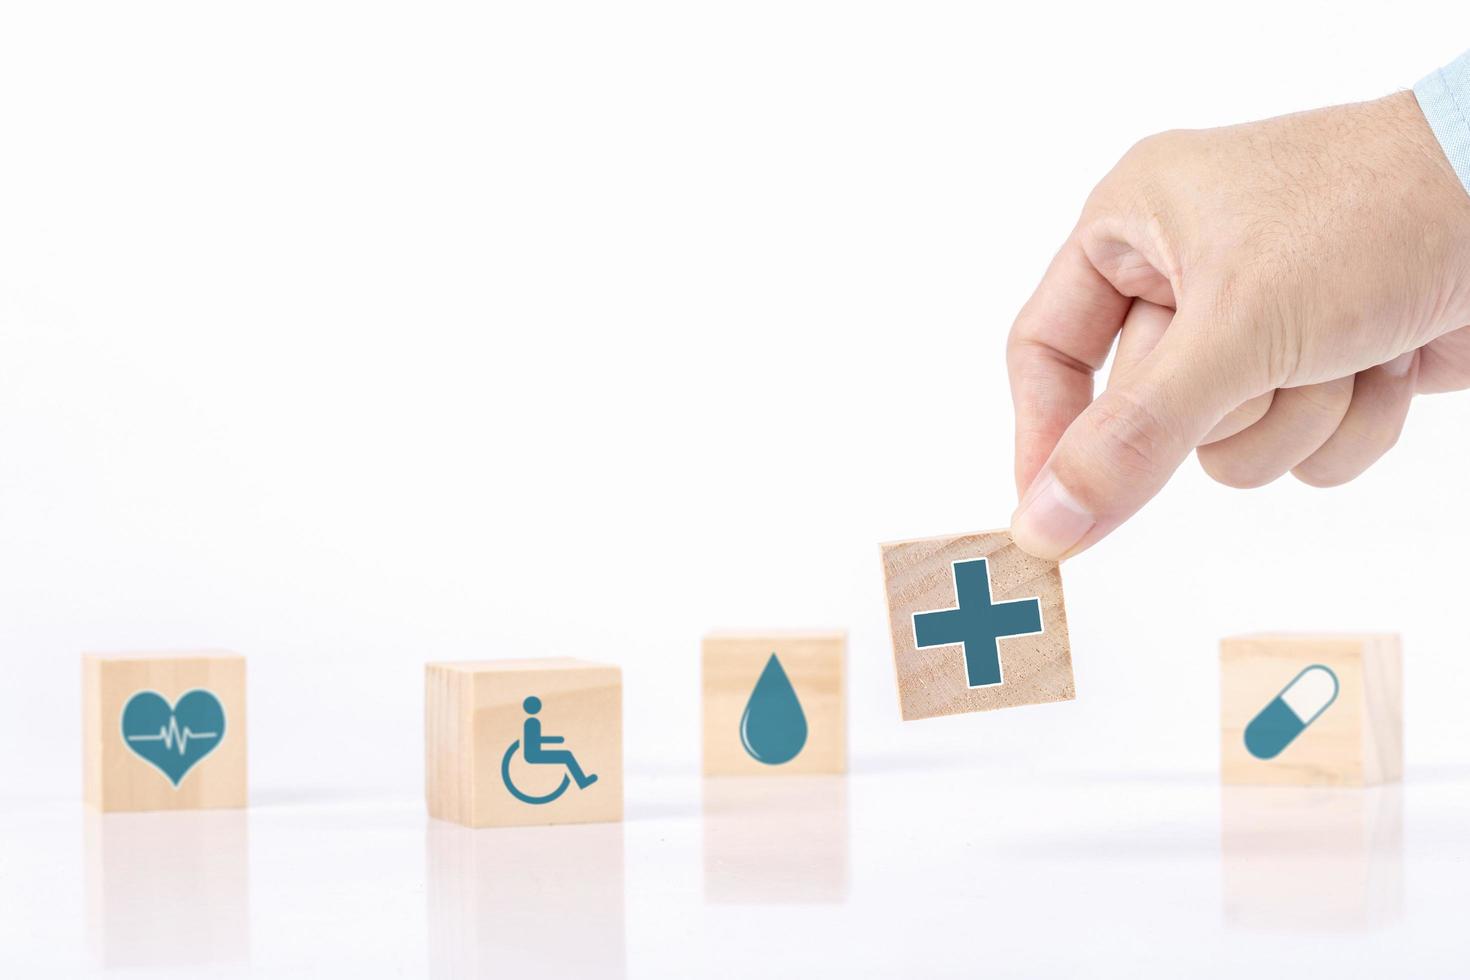 la mano sceglie un simbolo medico sanitario delle icone di emoticon sul blocco di legno, sul concetto di assicurazione sanitaria e medica foto